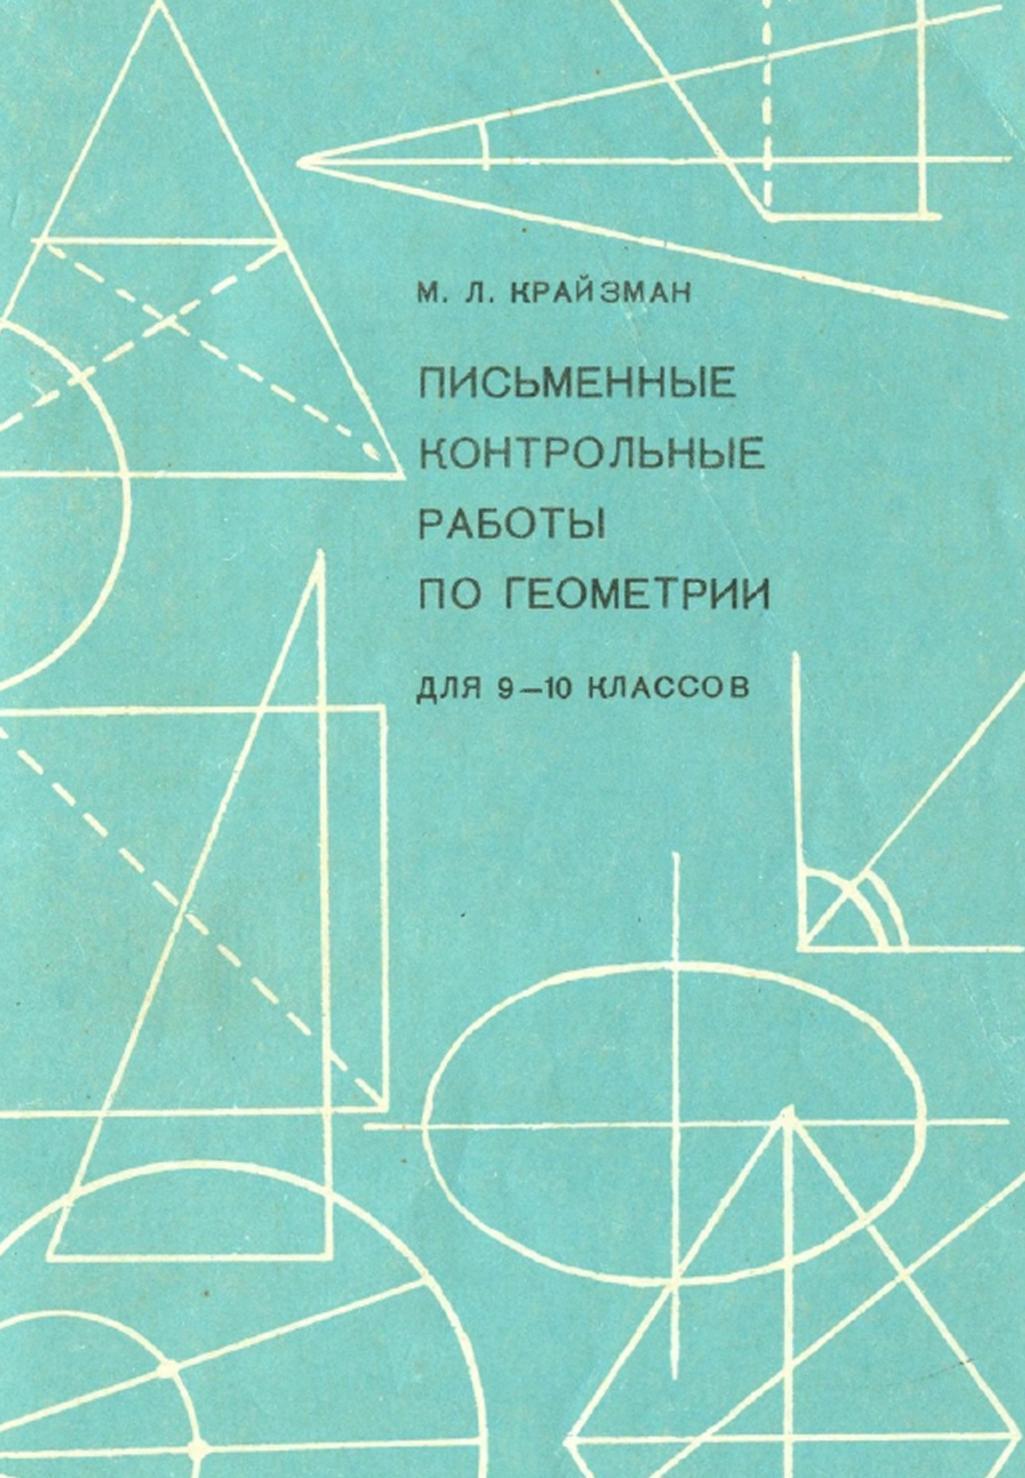 Письменные контрольные работы по геометрии для 9-10 классов, Крайзман М.Л., 1970